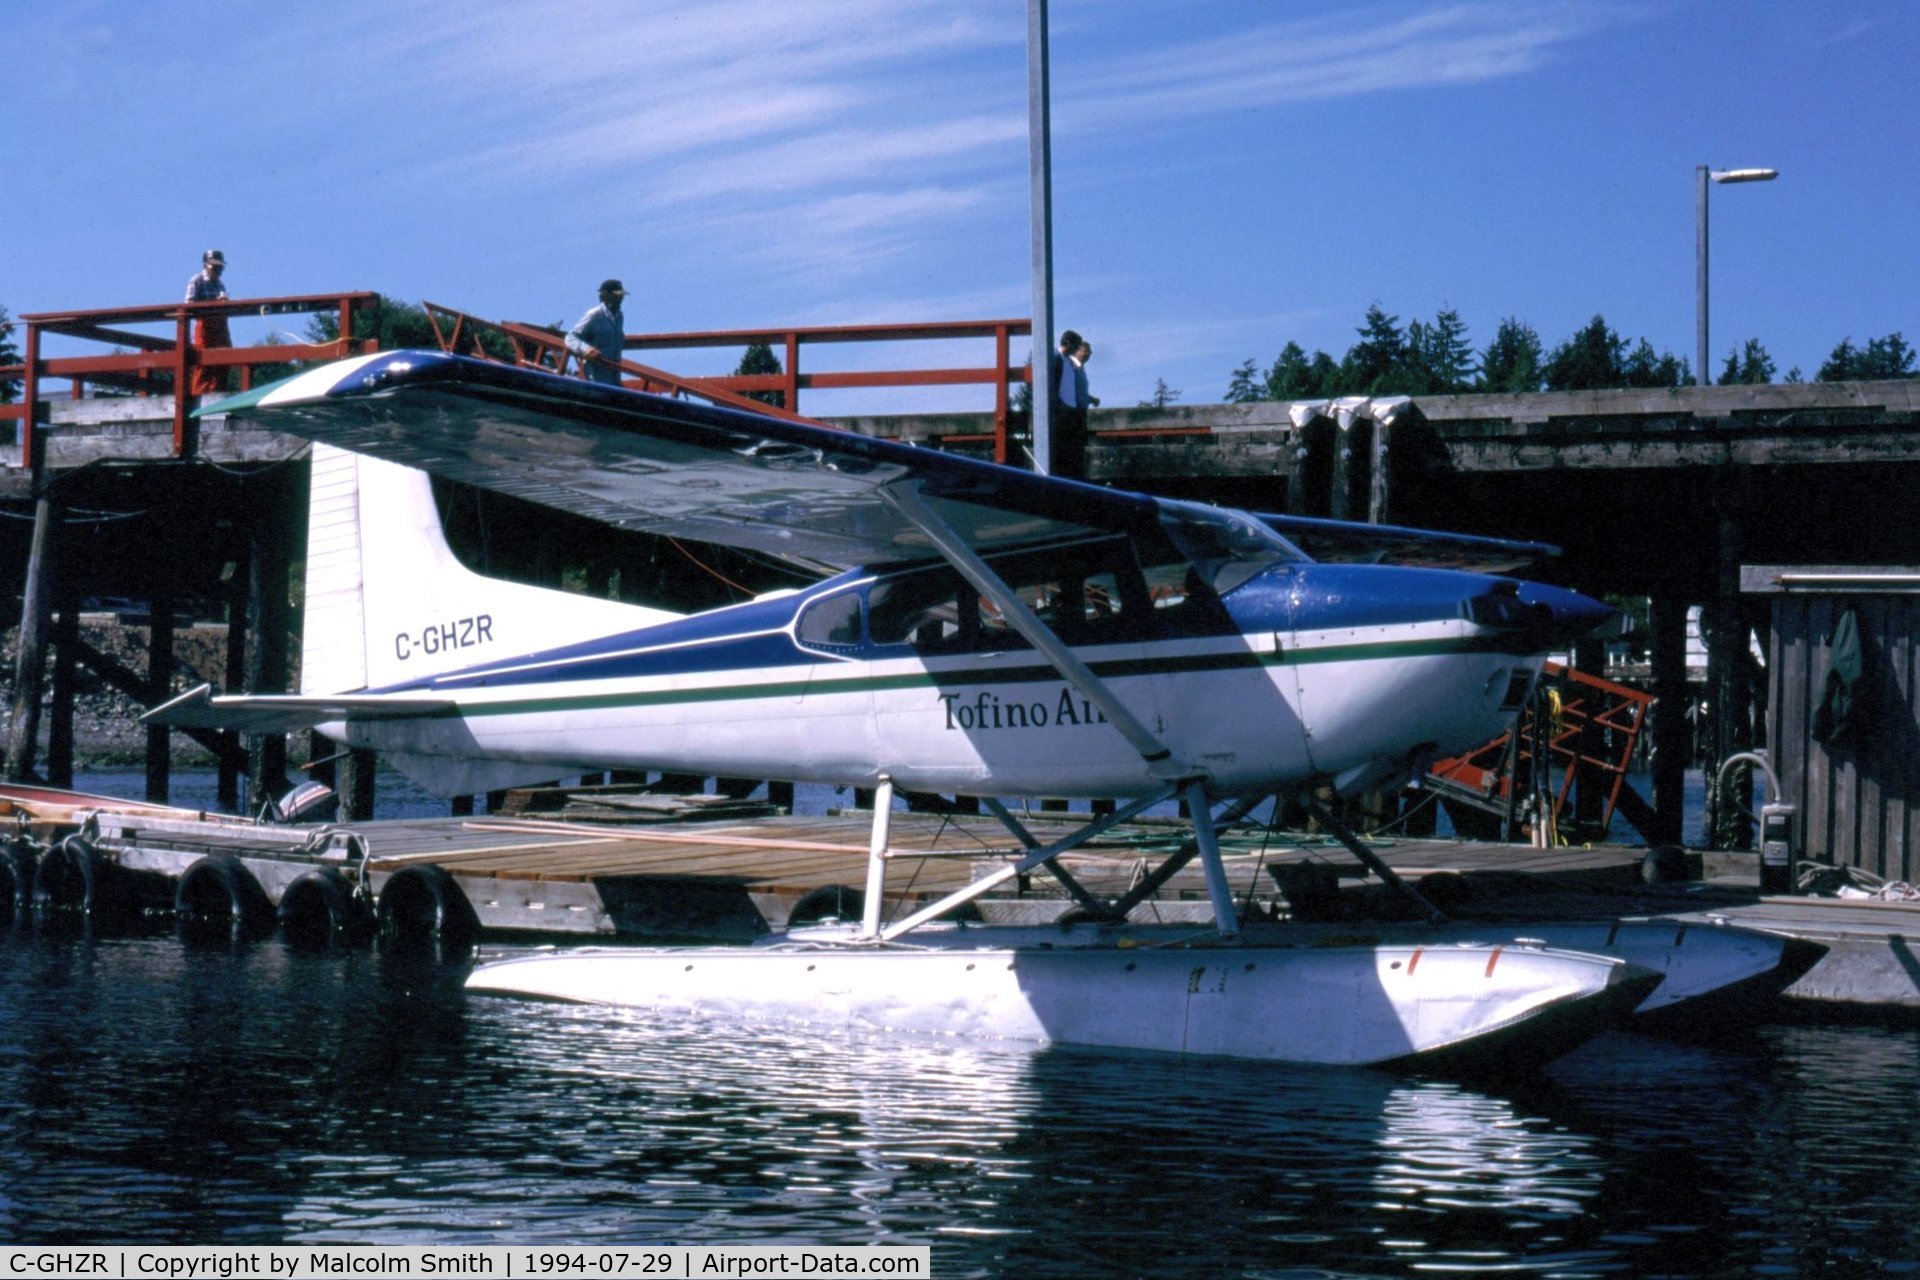 C-GHZR, 1976 Cessna 180J C/N 18052667, C-GHZR - Tofino Airlines Cessna 180J floatplane, at Tofino harbour, BC